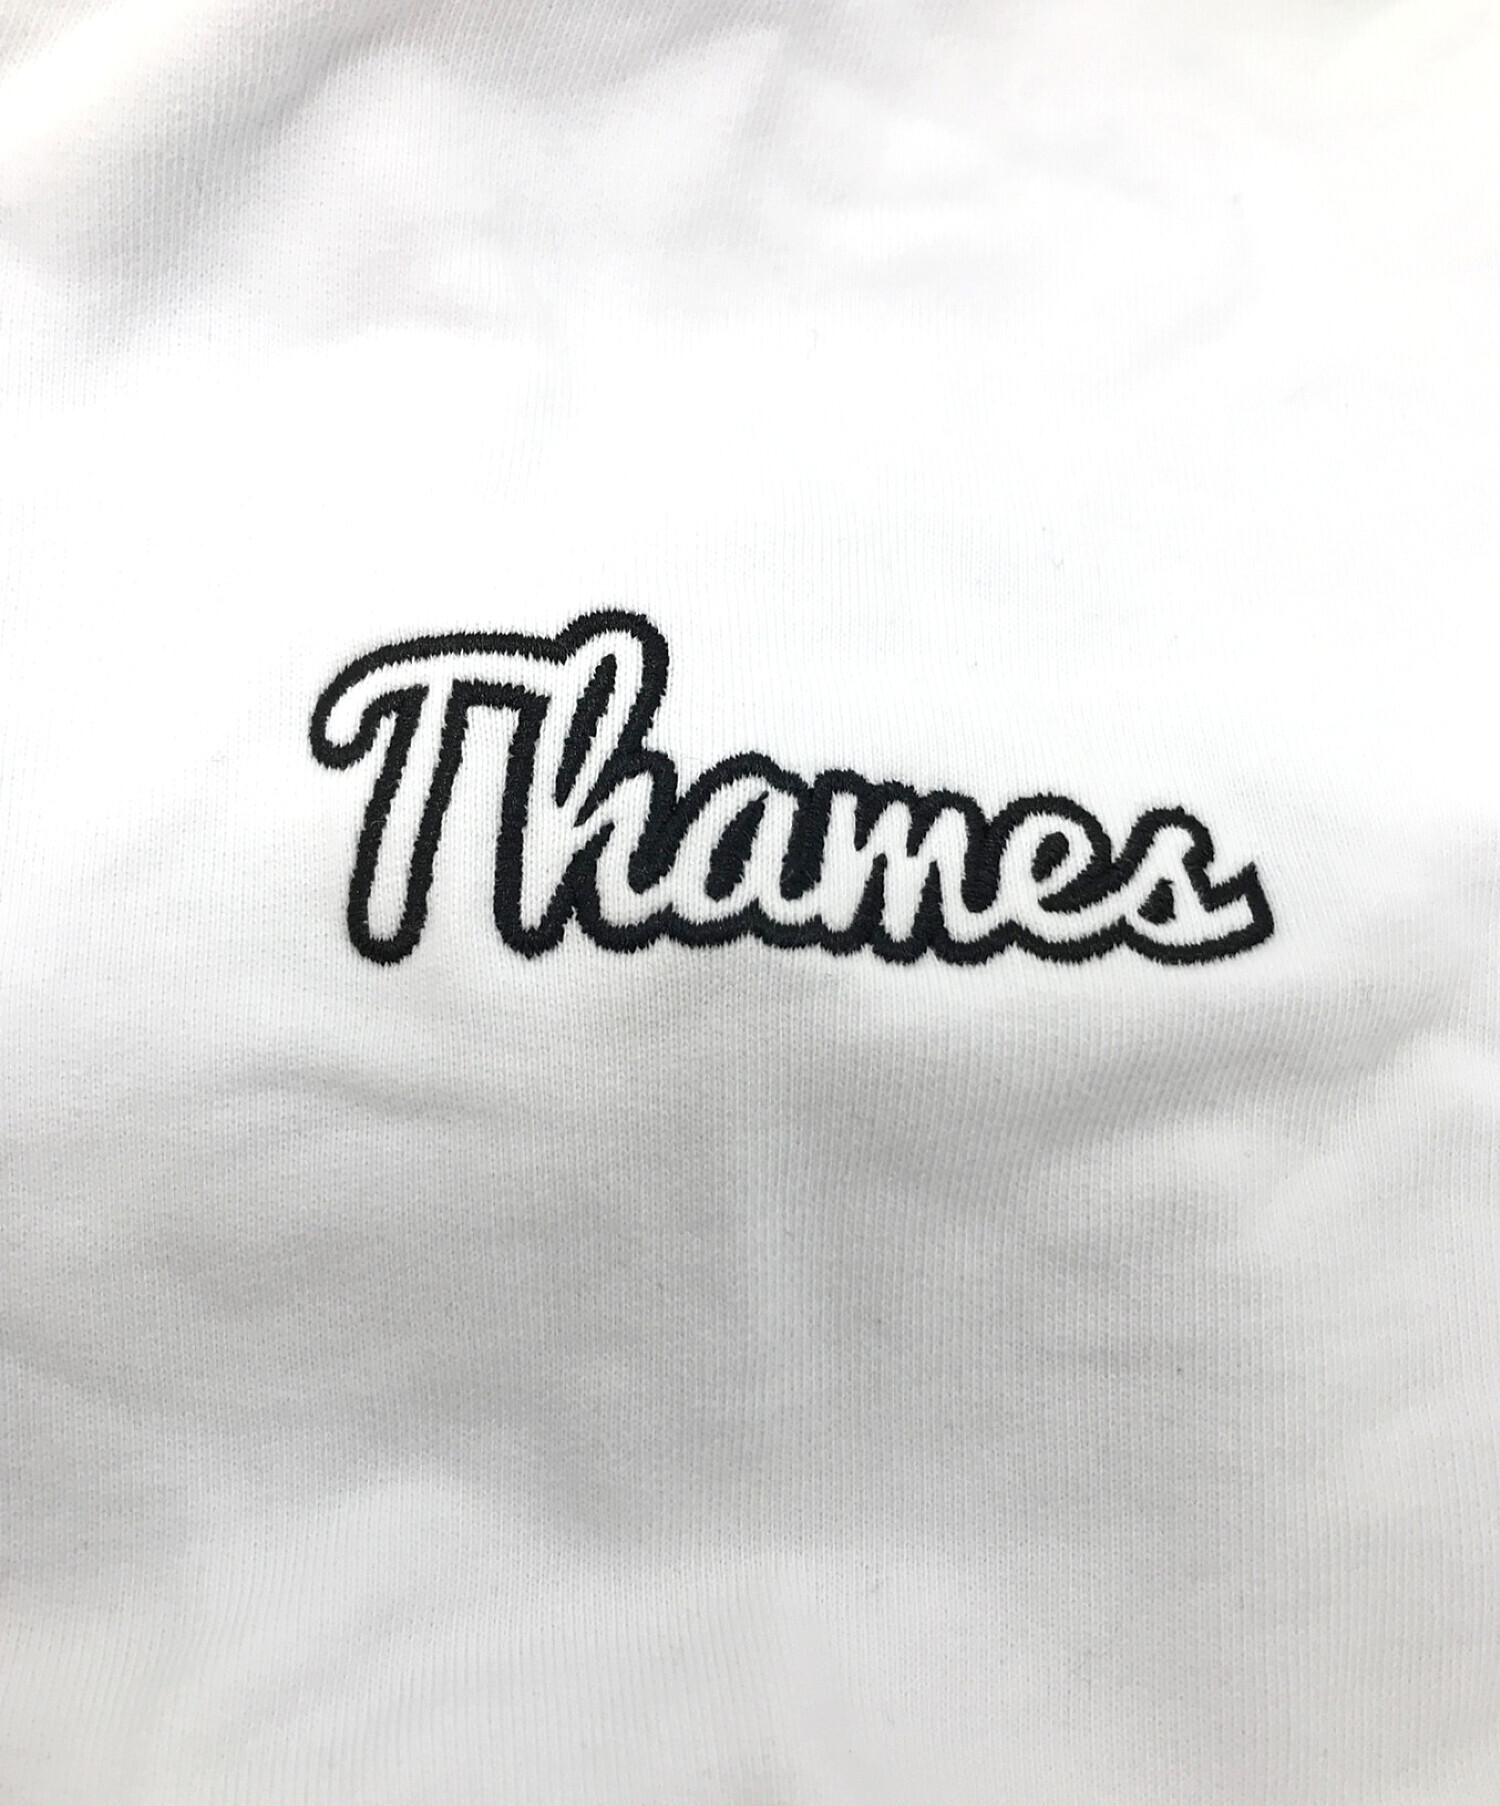 中古・古着通販】Thames (テムズ) ダイアナパーカー ホワイト サイズ:L